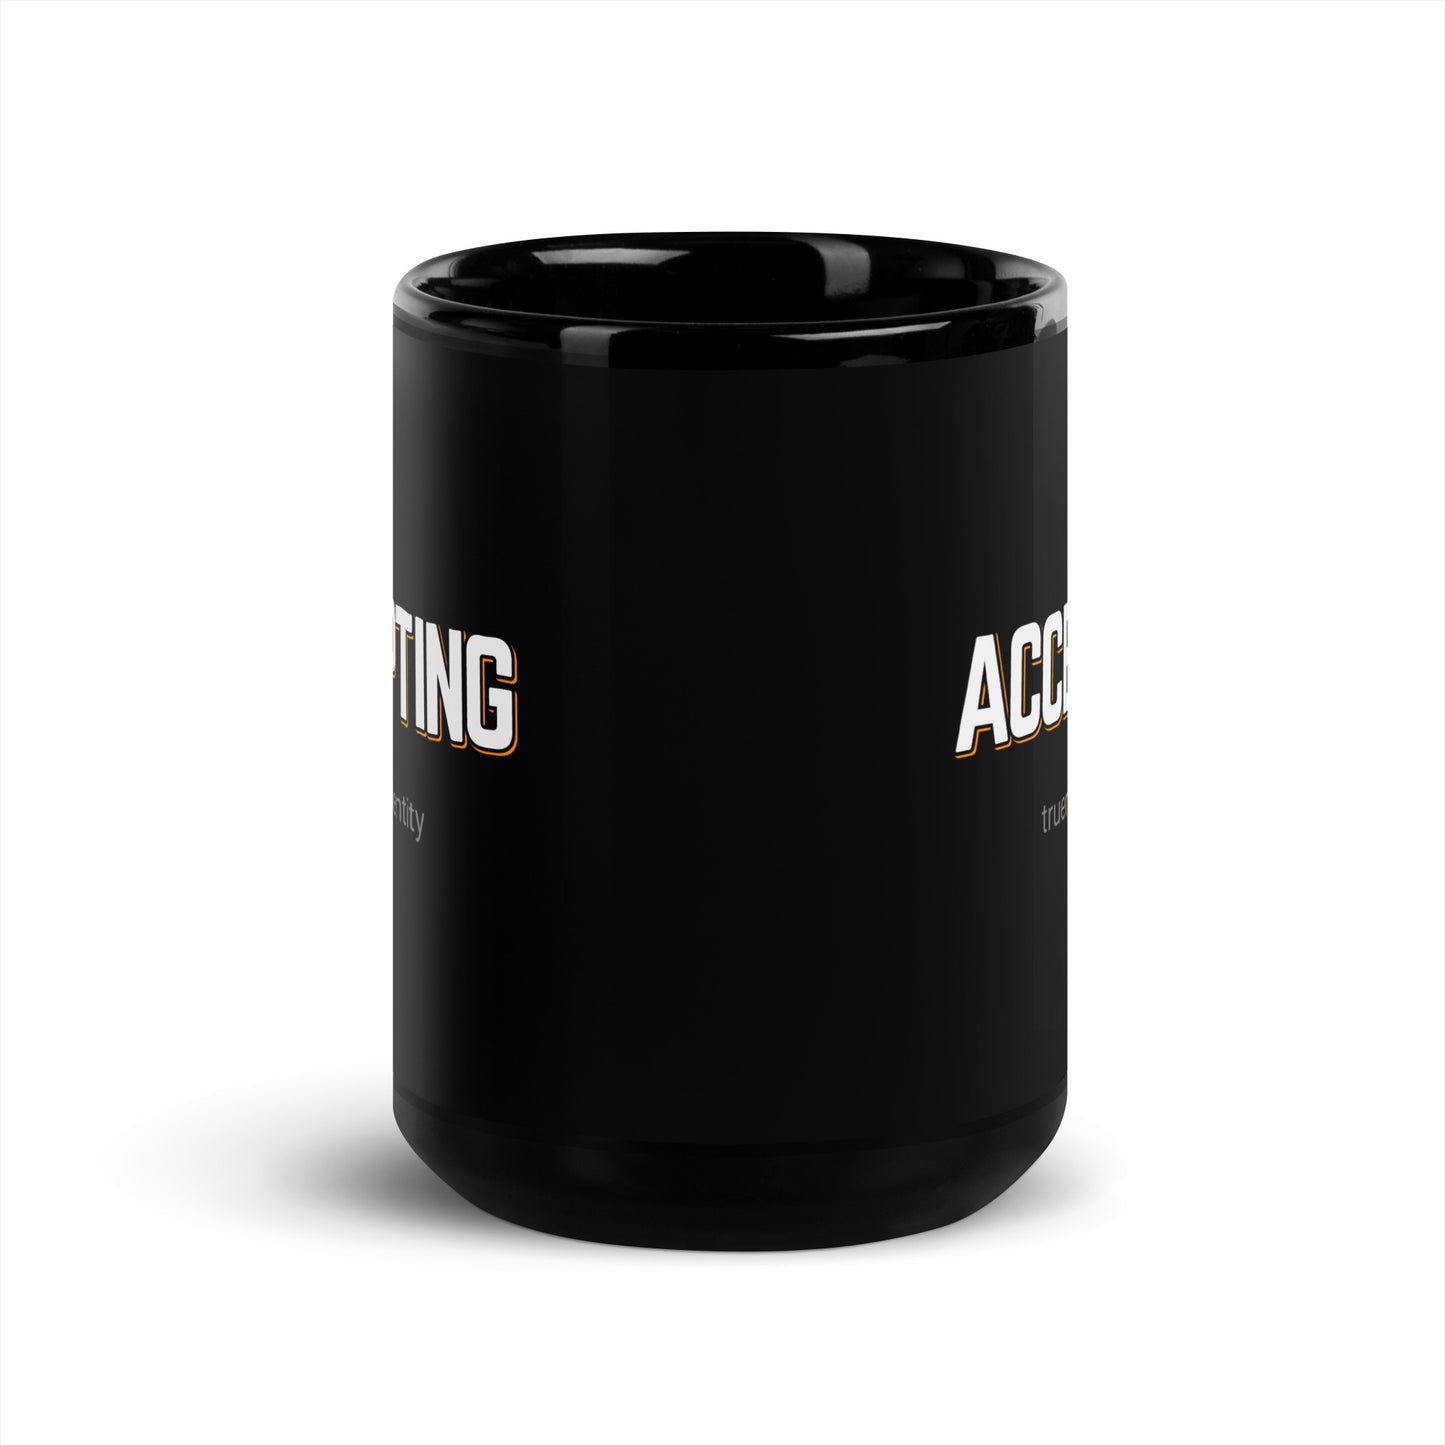 ACCEPTING Black Coffee Mug Bold 11 oz or 15 oz